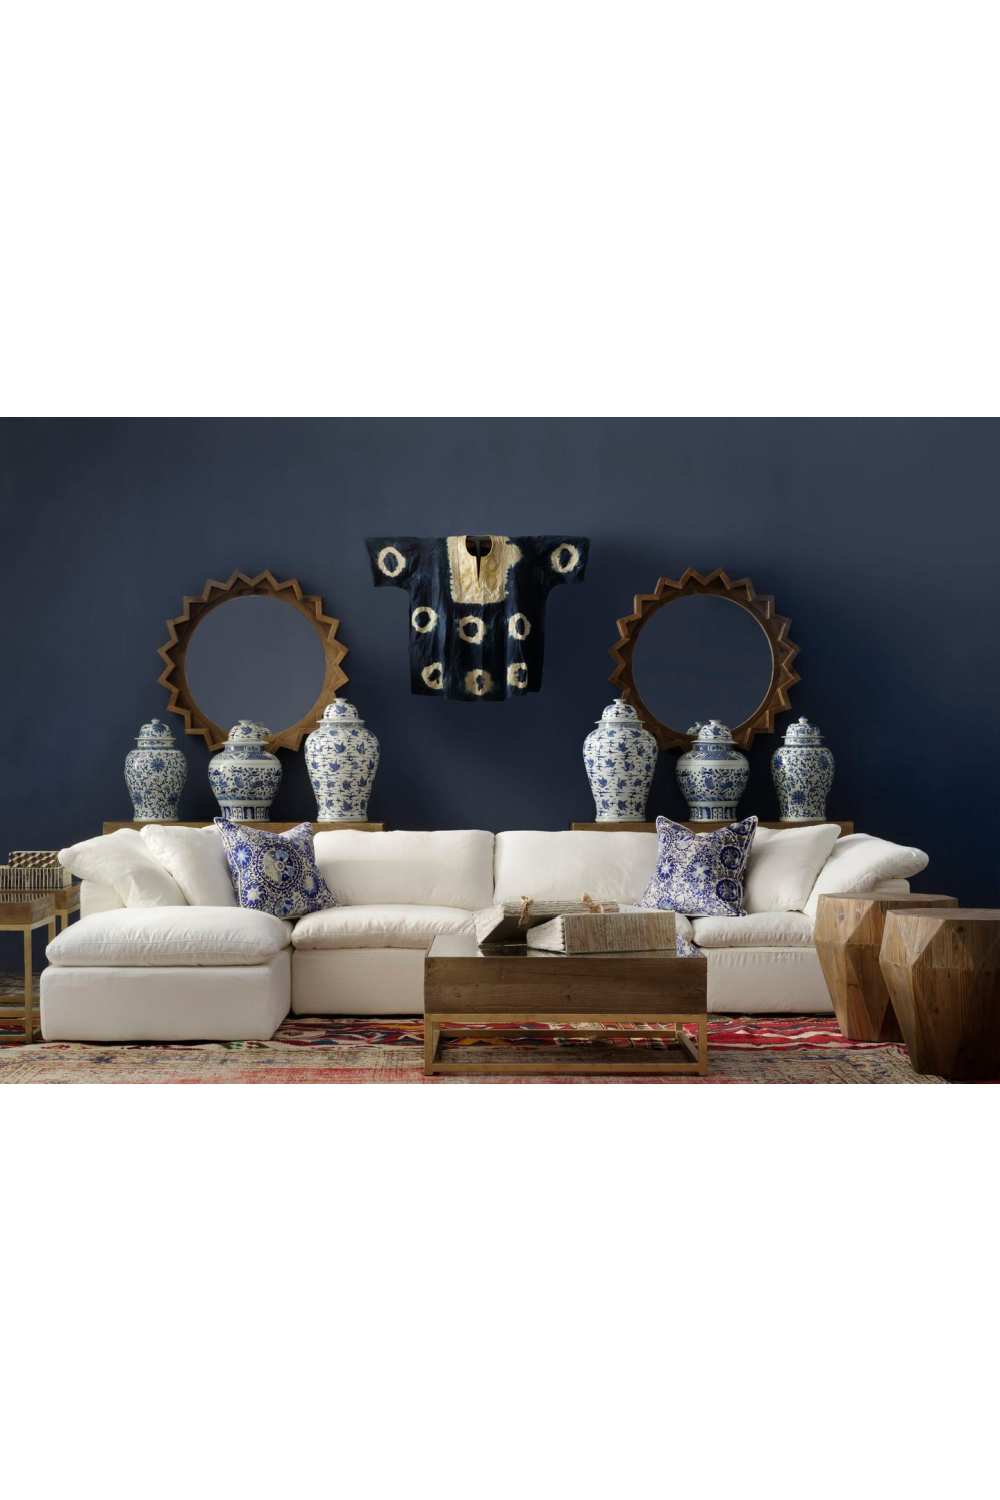 Chalk White Linen Sectional Sofa Jnr | Andrew Martin Truman | OROA